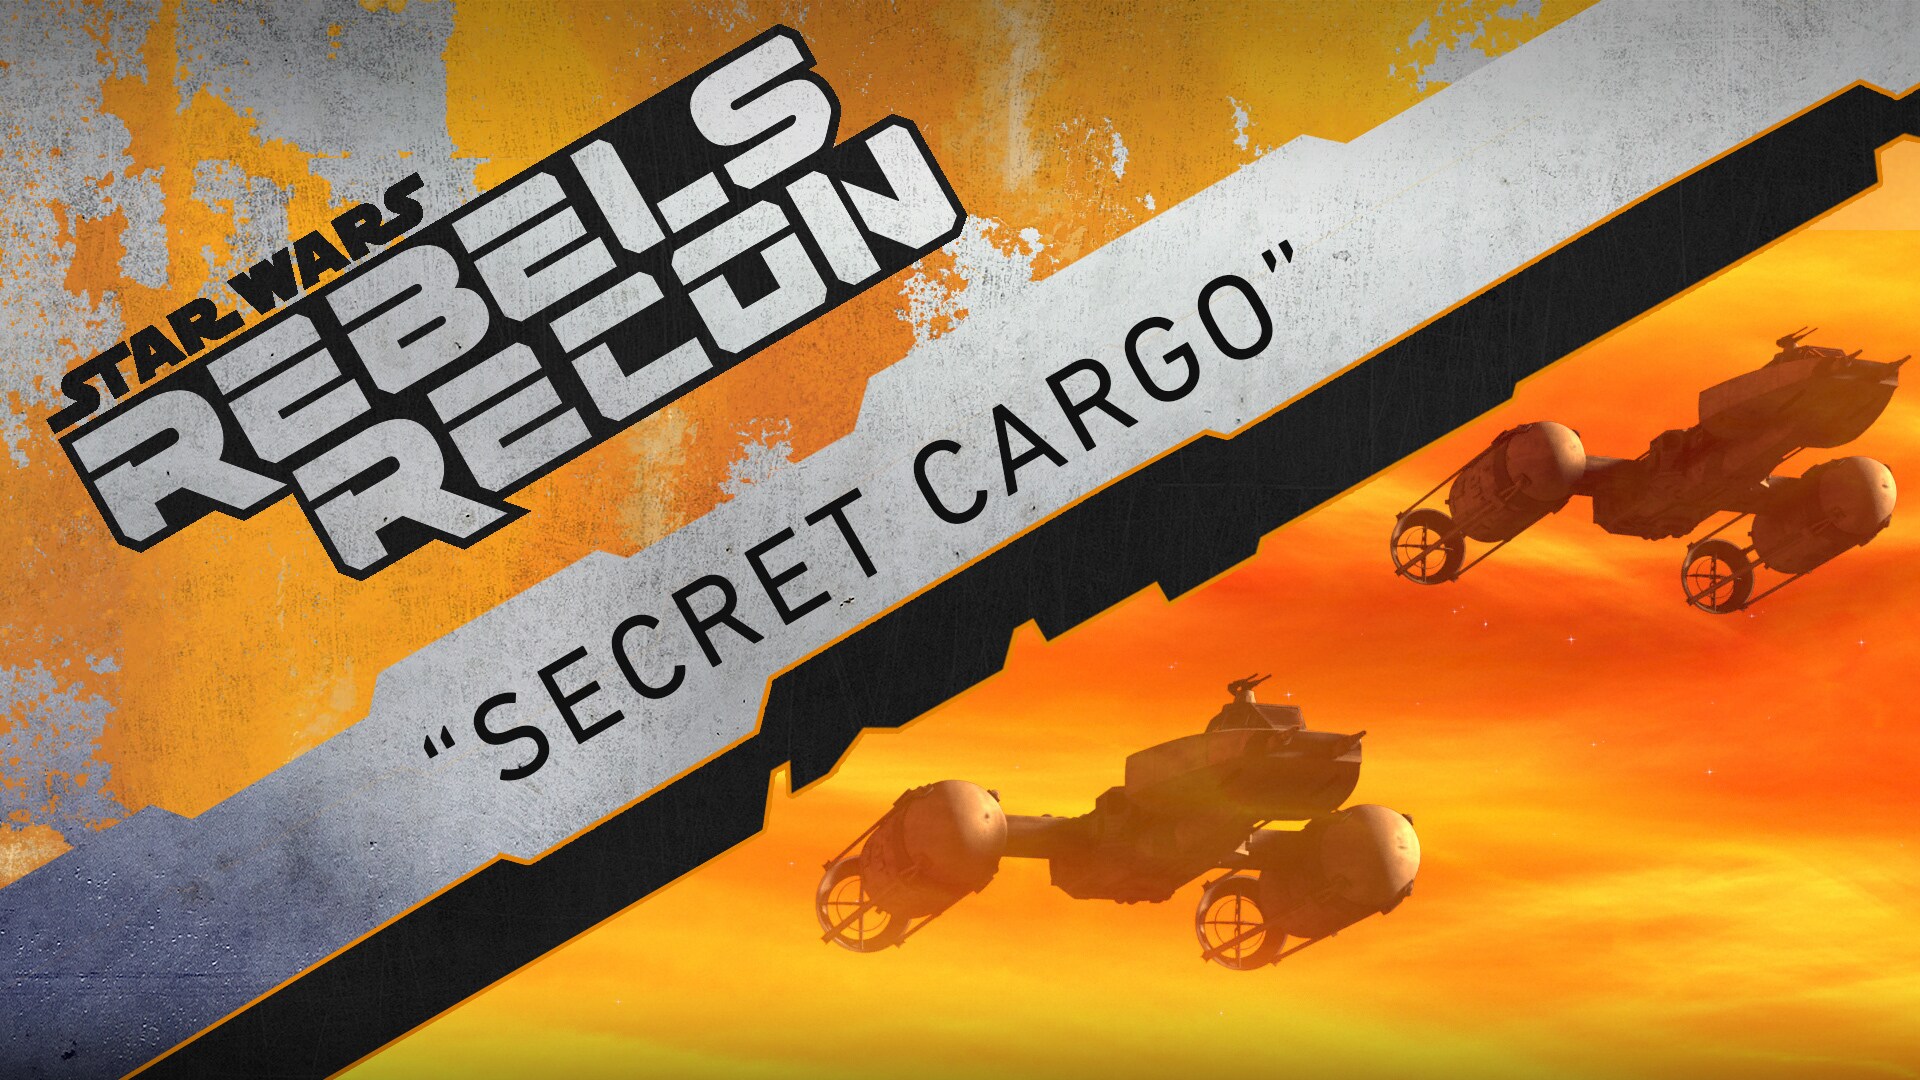 Rebels Recon: Inside "Secret Cargo"